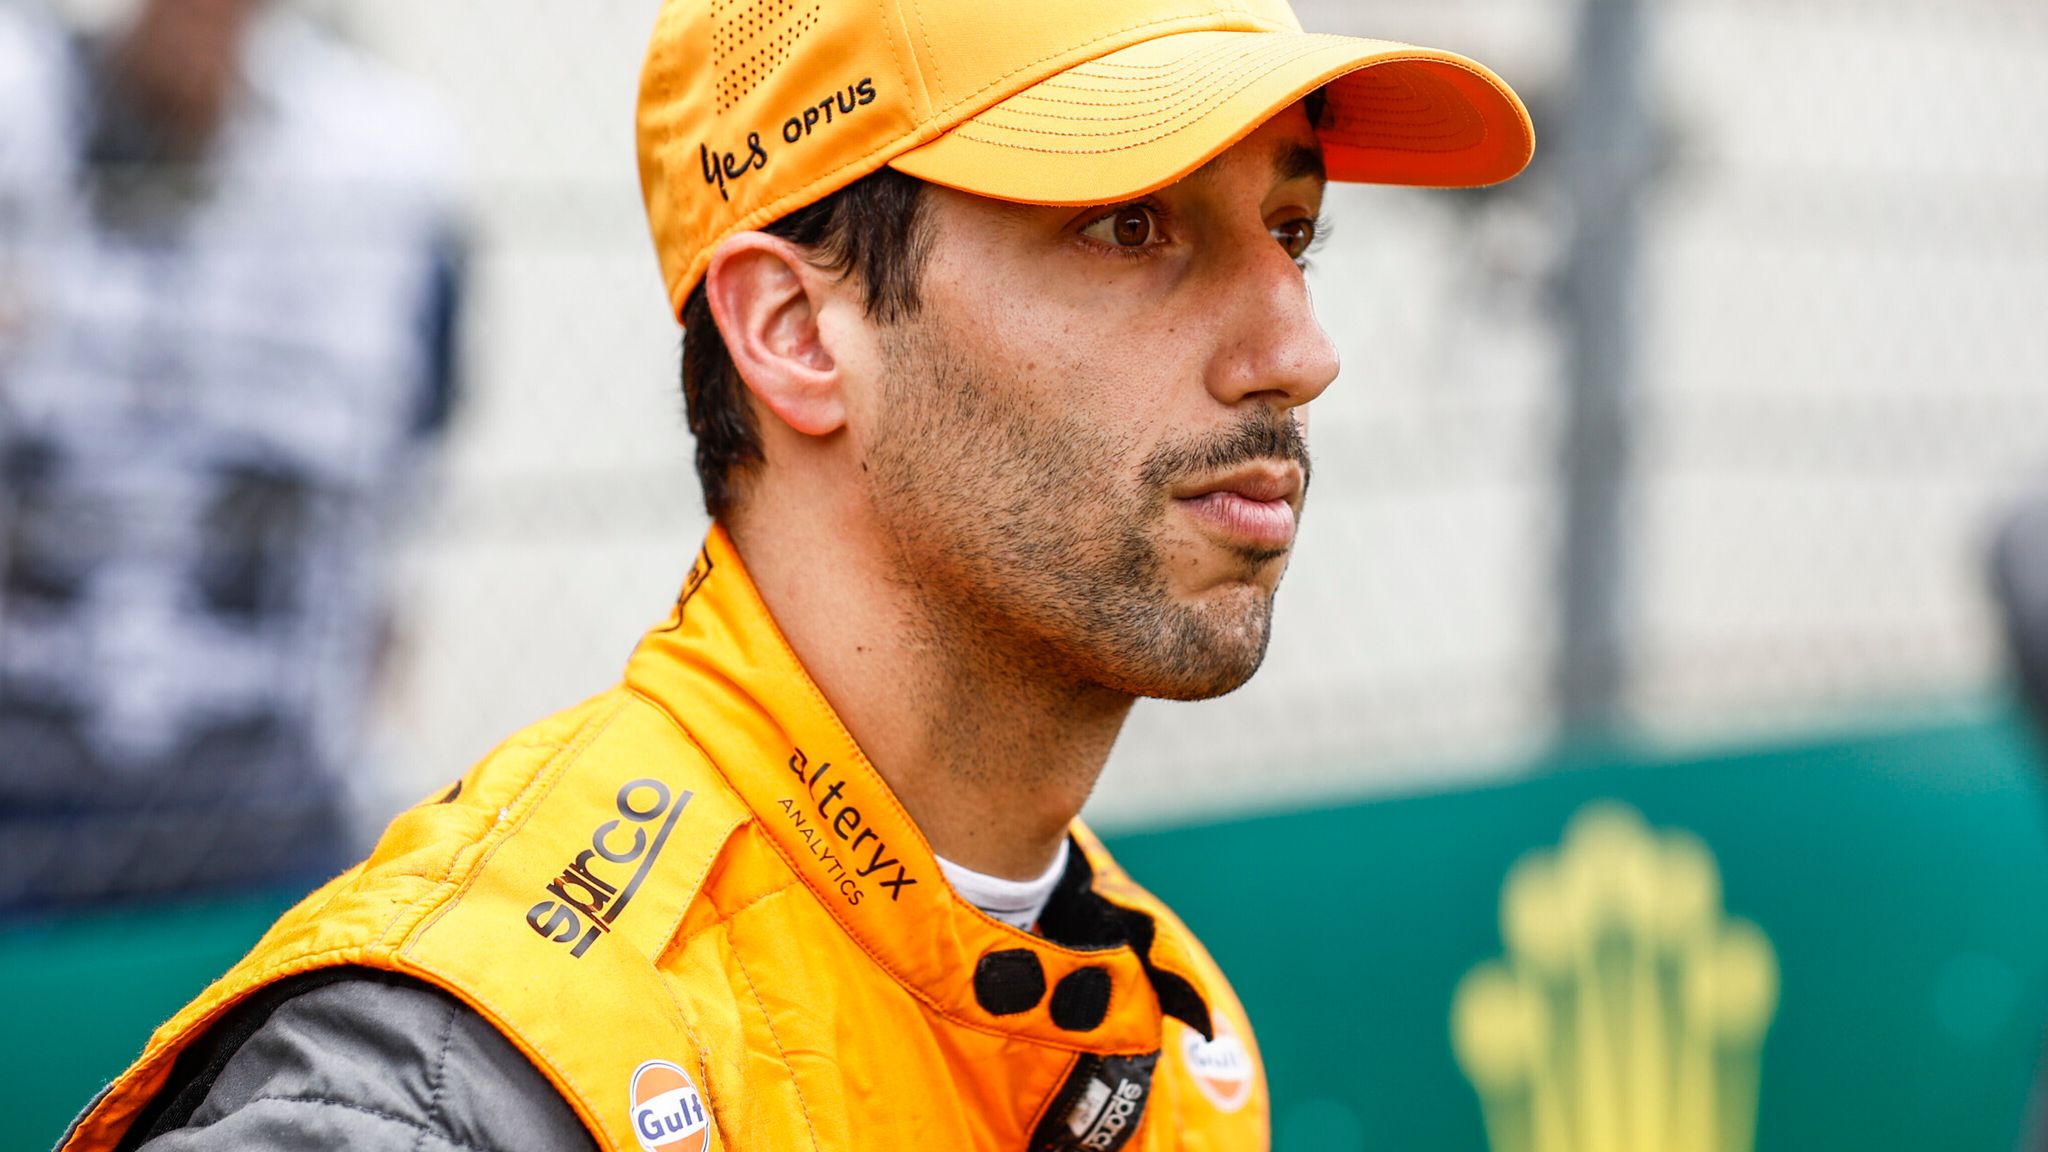 Ken Mills News: Is Daniel Ricciardo Still In F1 2023